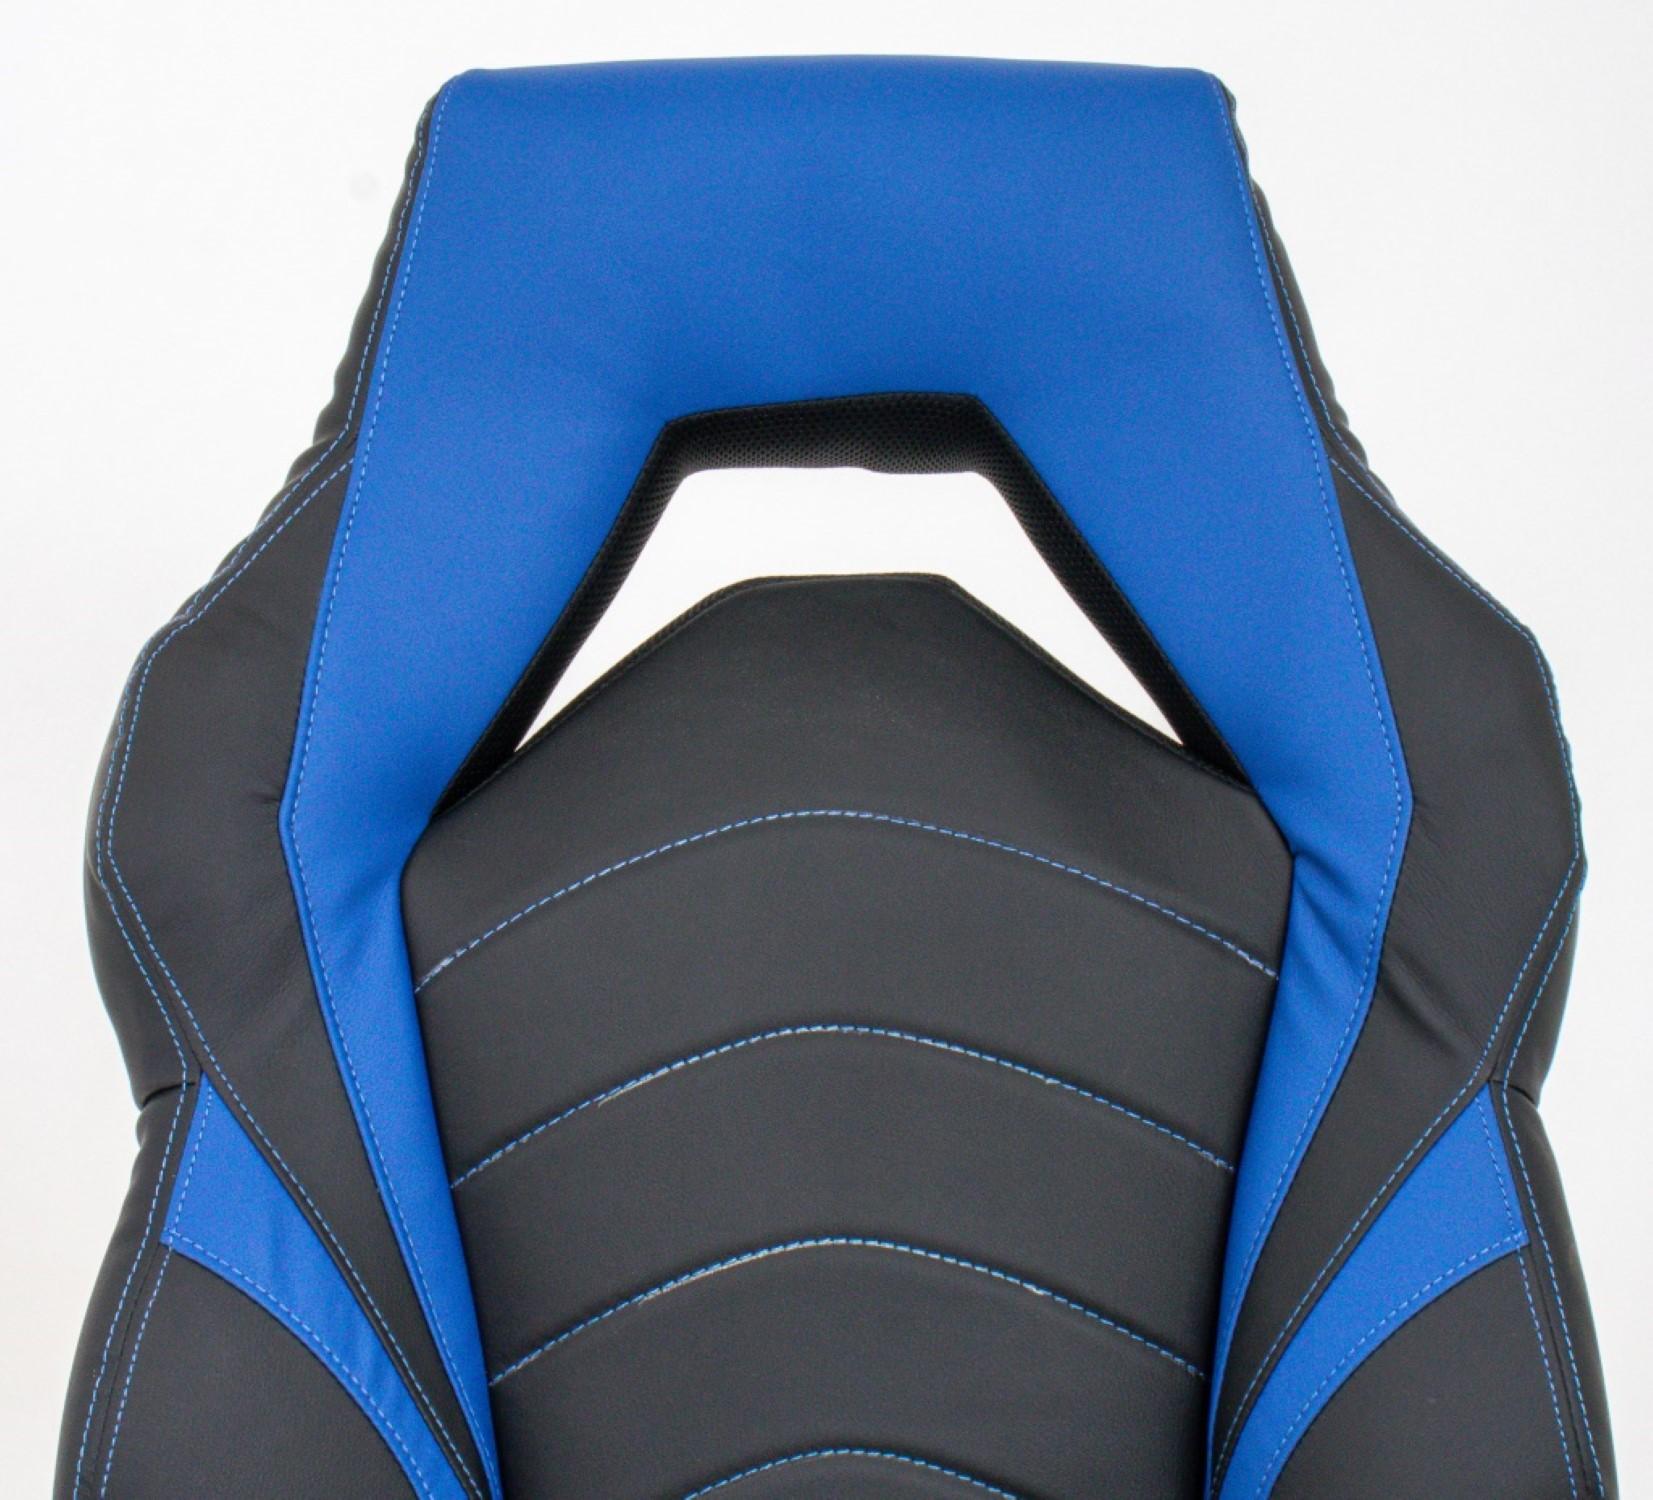 Schwarzer und blauer extrabreiter Gaming-Stuhl, mit verstellbaren Armlehnen und Sitzhöhe.

47 Zoll in der Höhe, 21 Zoll in der Breite und 20 Zoll in der Tiefe; die Sitzhöhe beträgt 18 Zoll